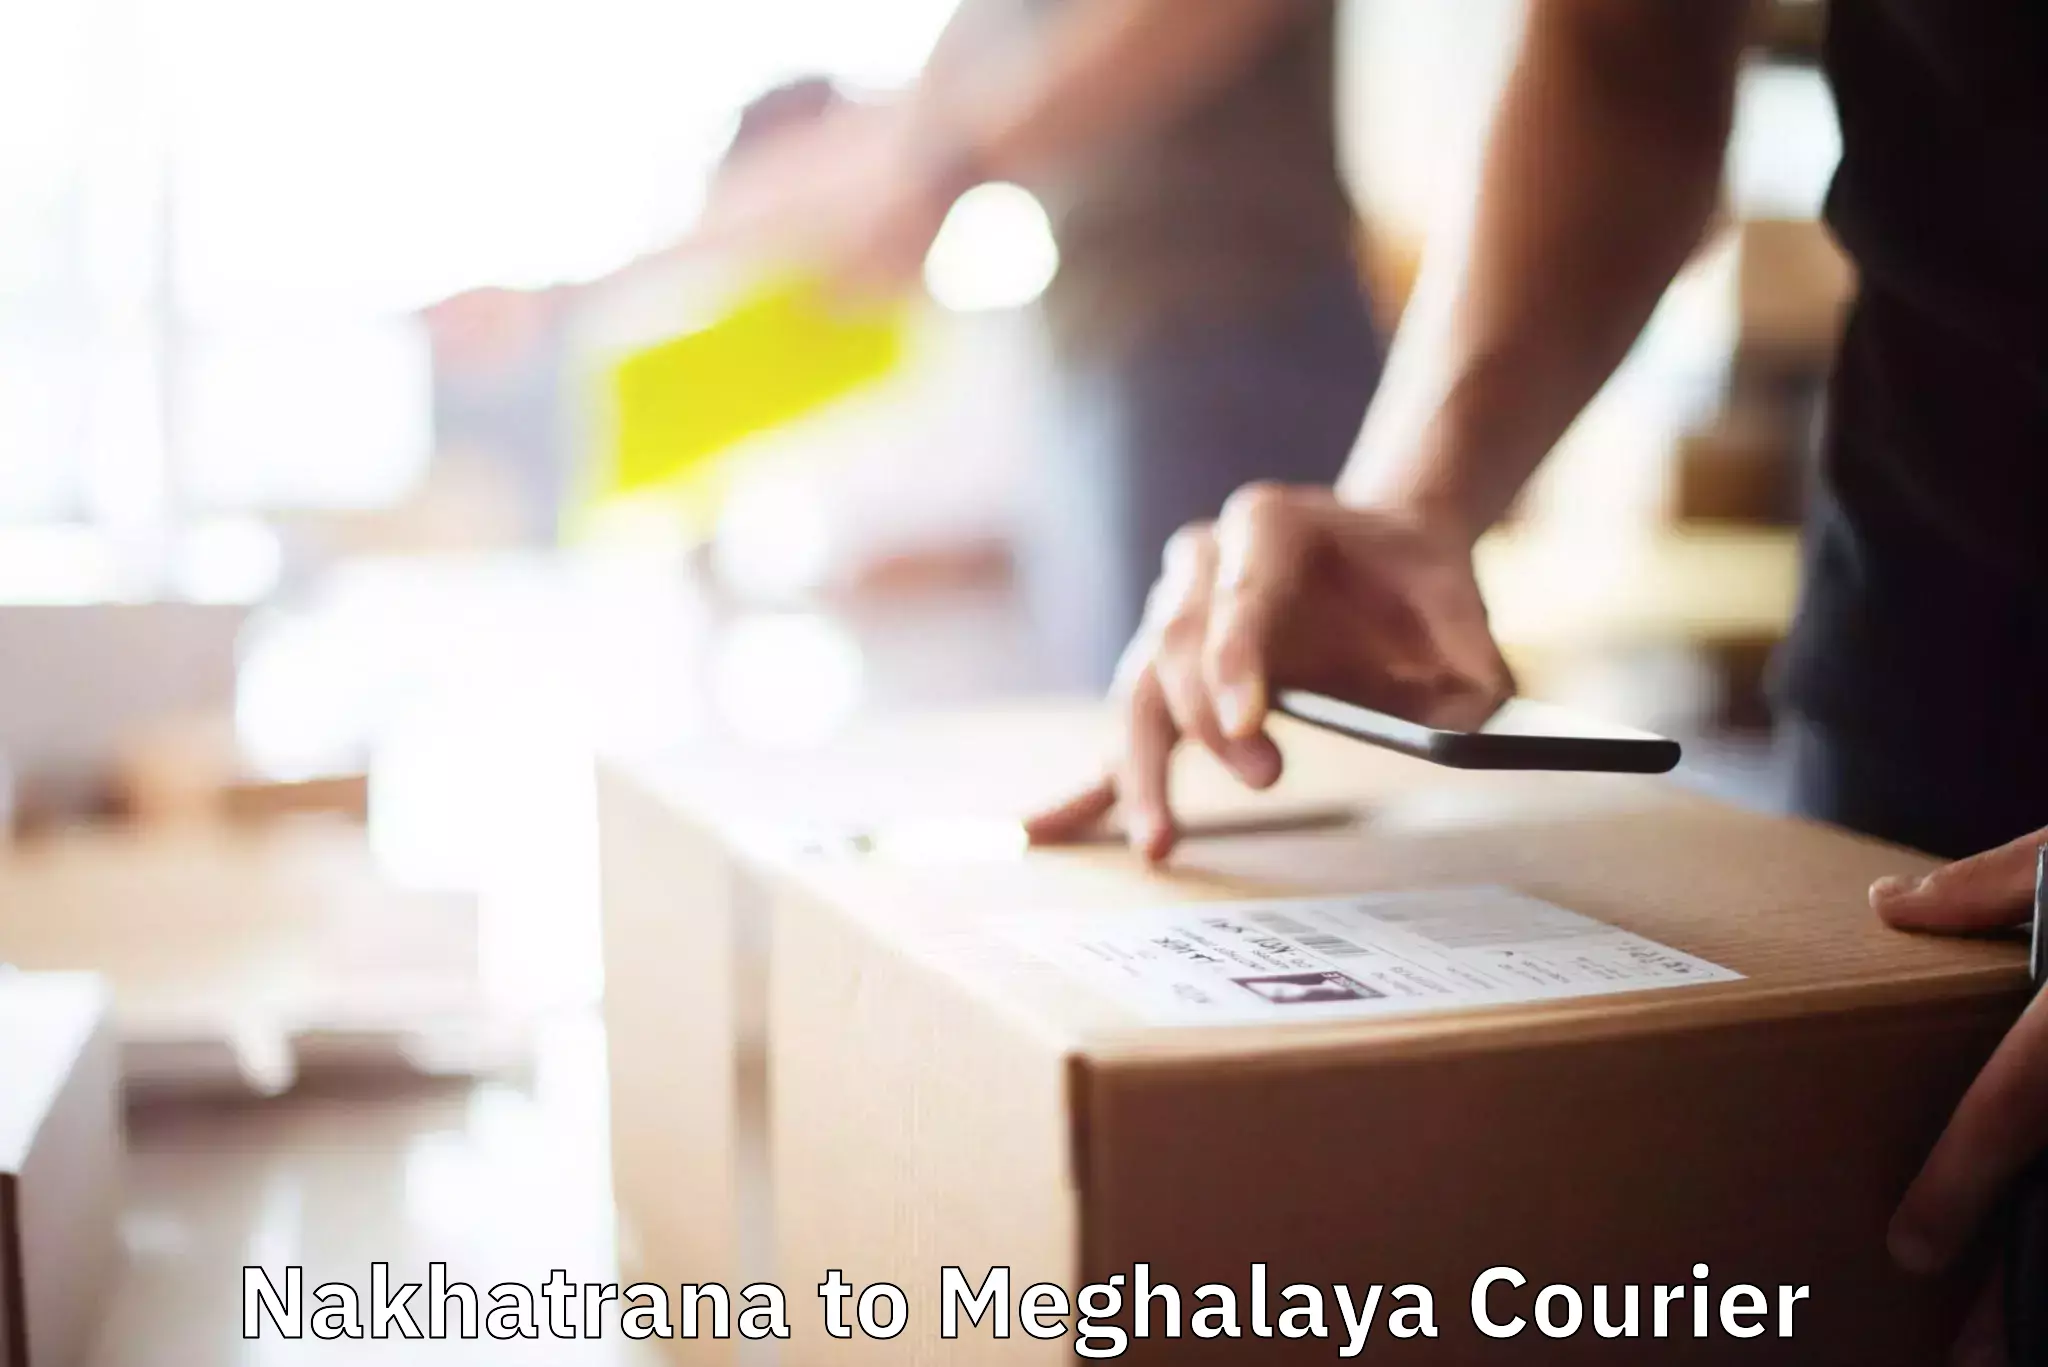 Efficient moving company Nakhatrana to Meghalaya